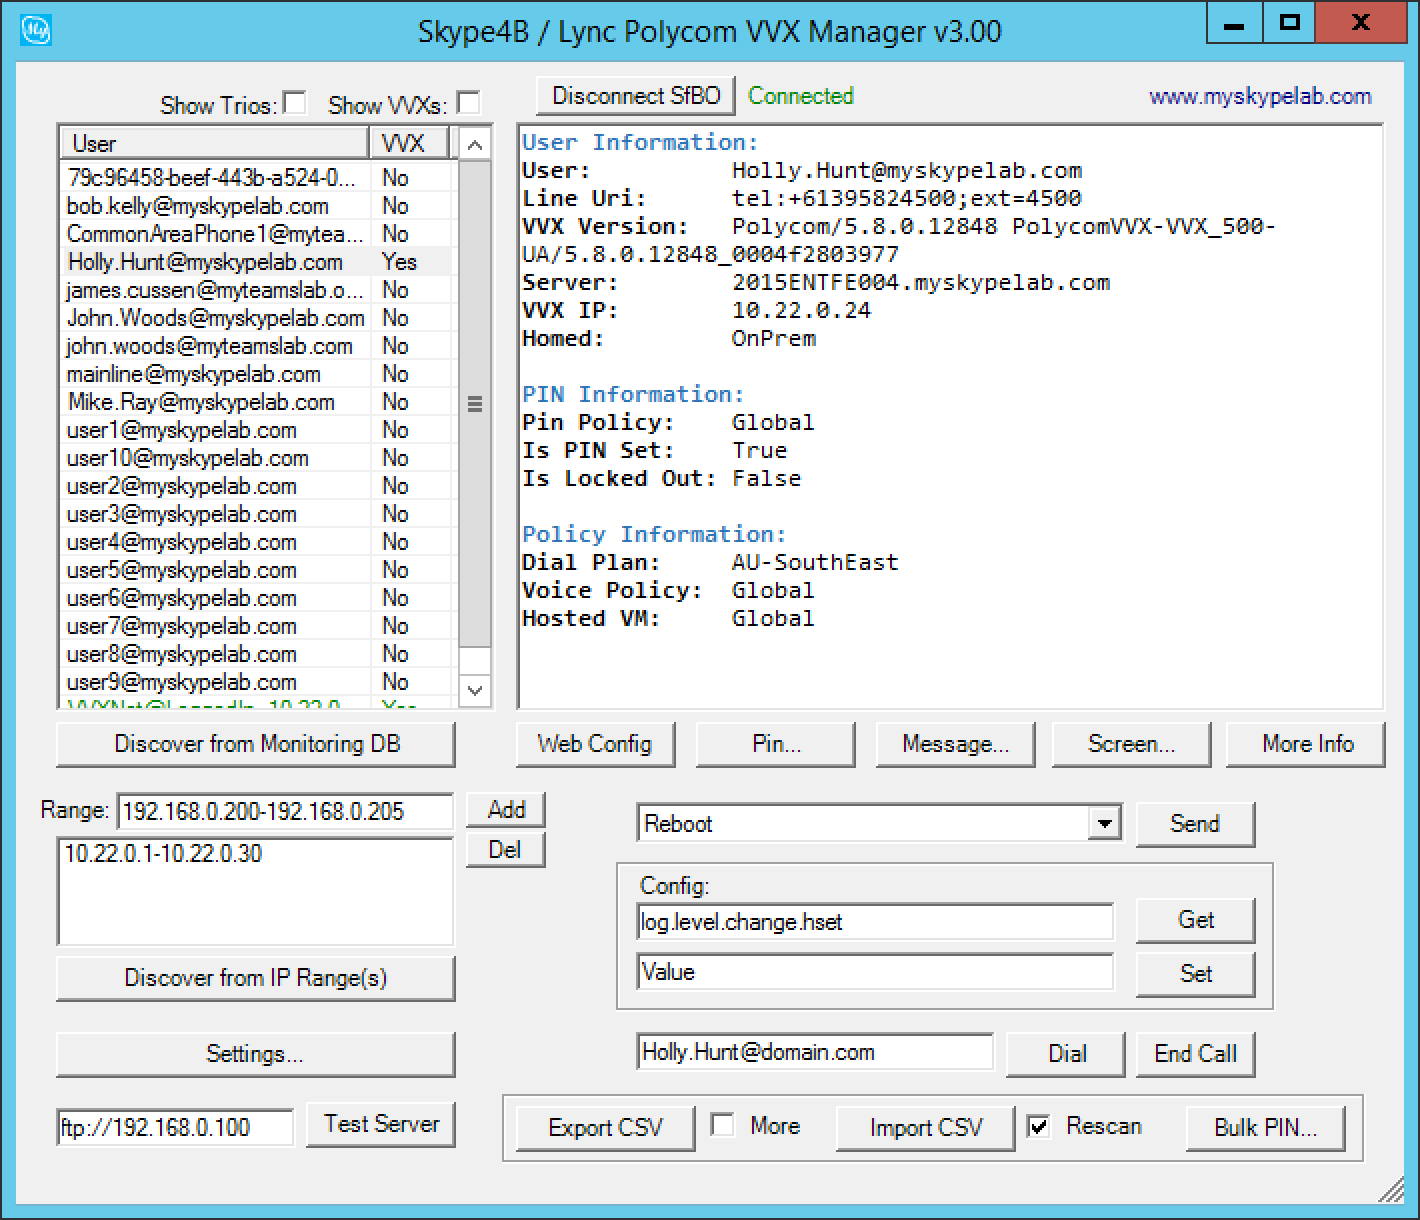 Skype for Business / Lync Polycom VVX Manager Version 3